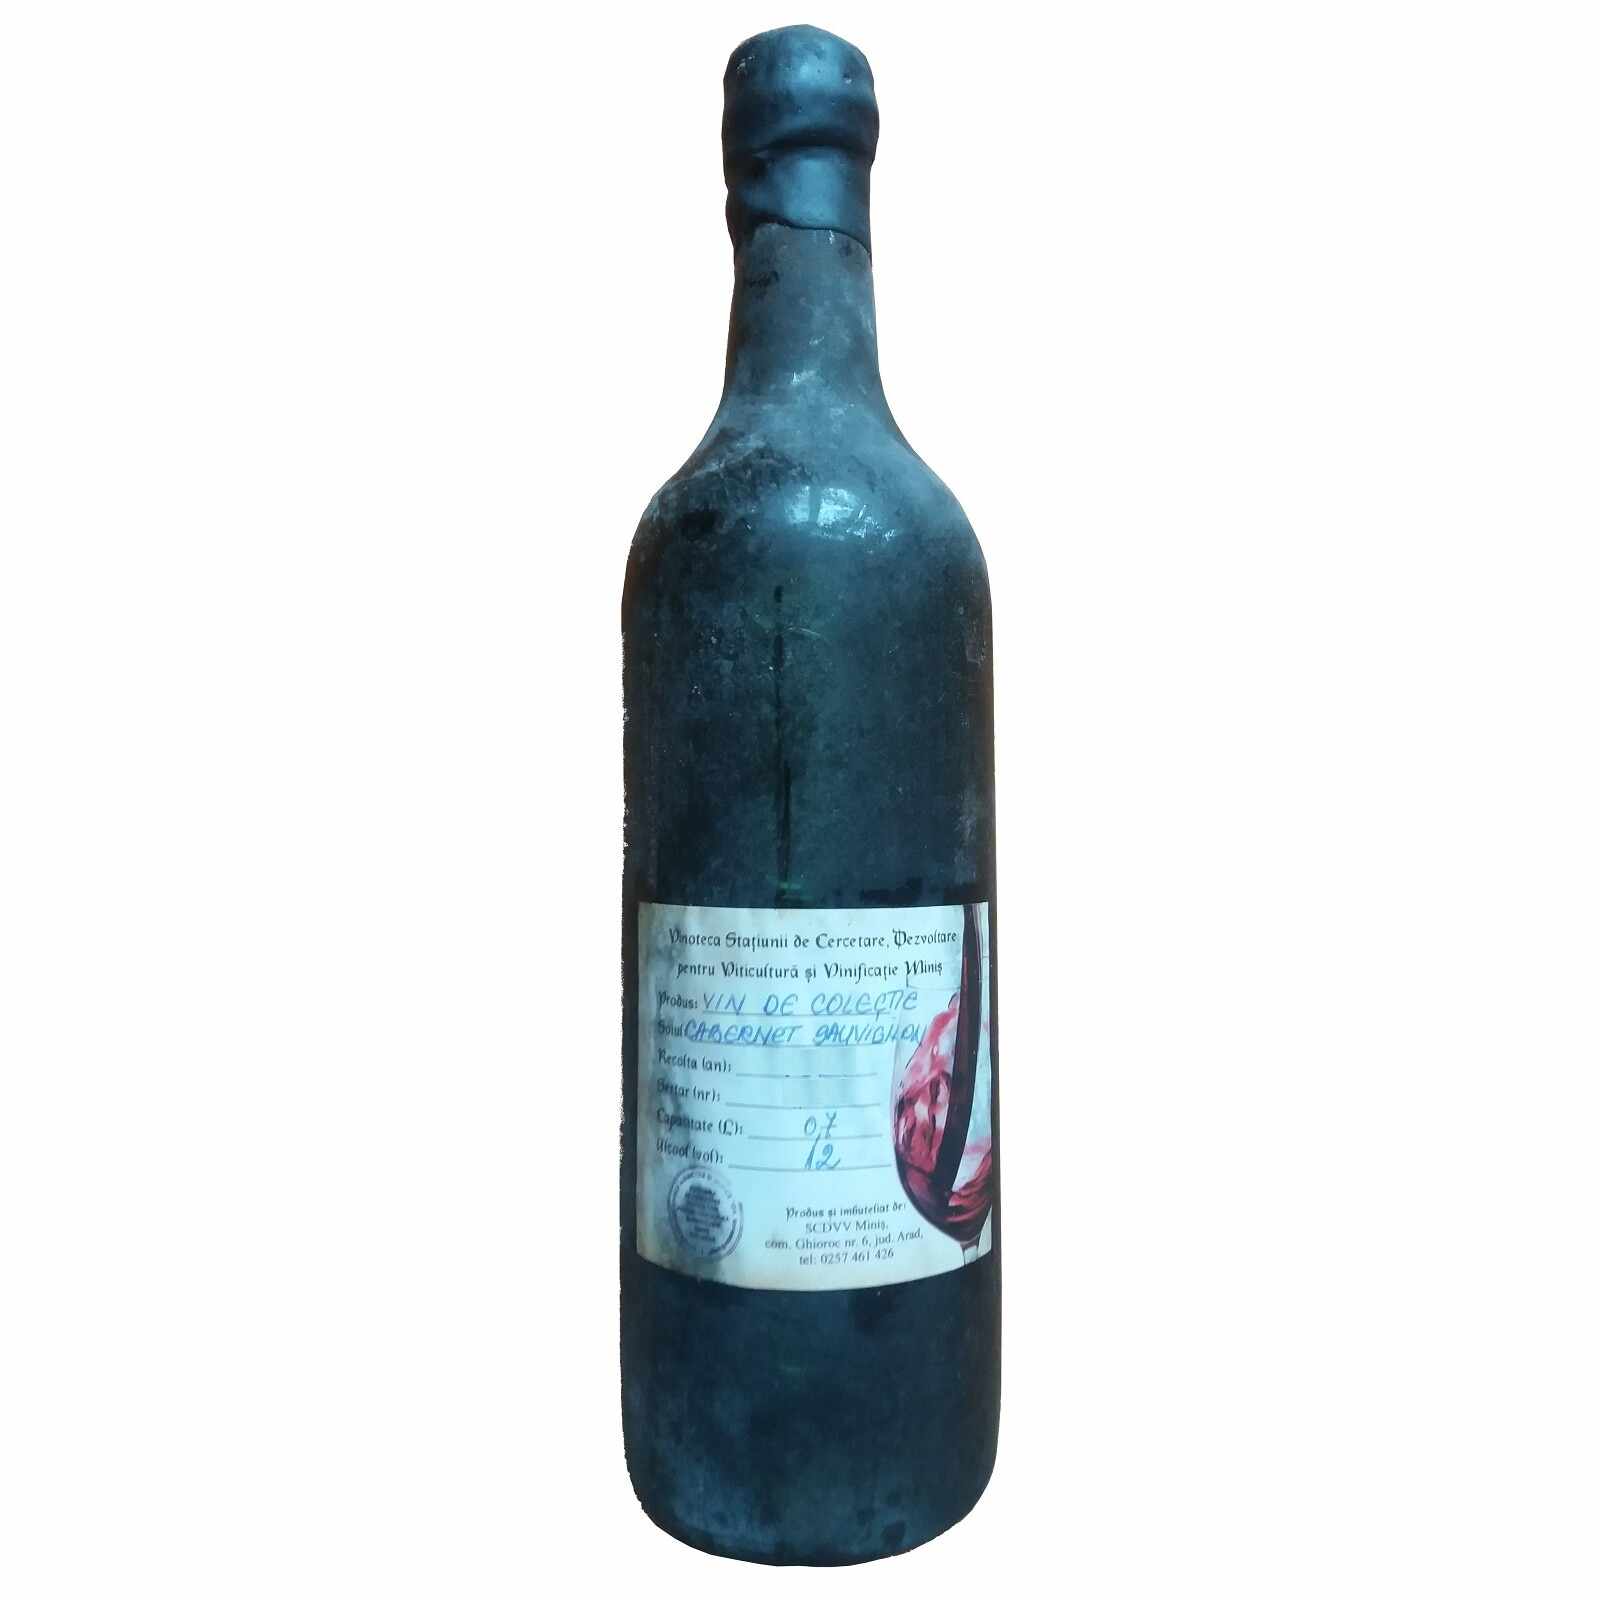 Vin de colectie Minis Cabernet Sauvignon 1985 rosu, in cutie lemn, 0.7L